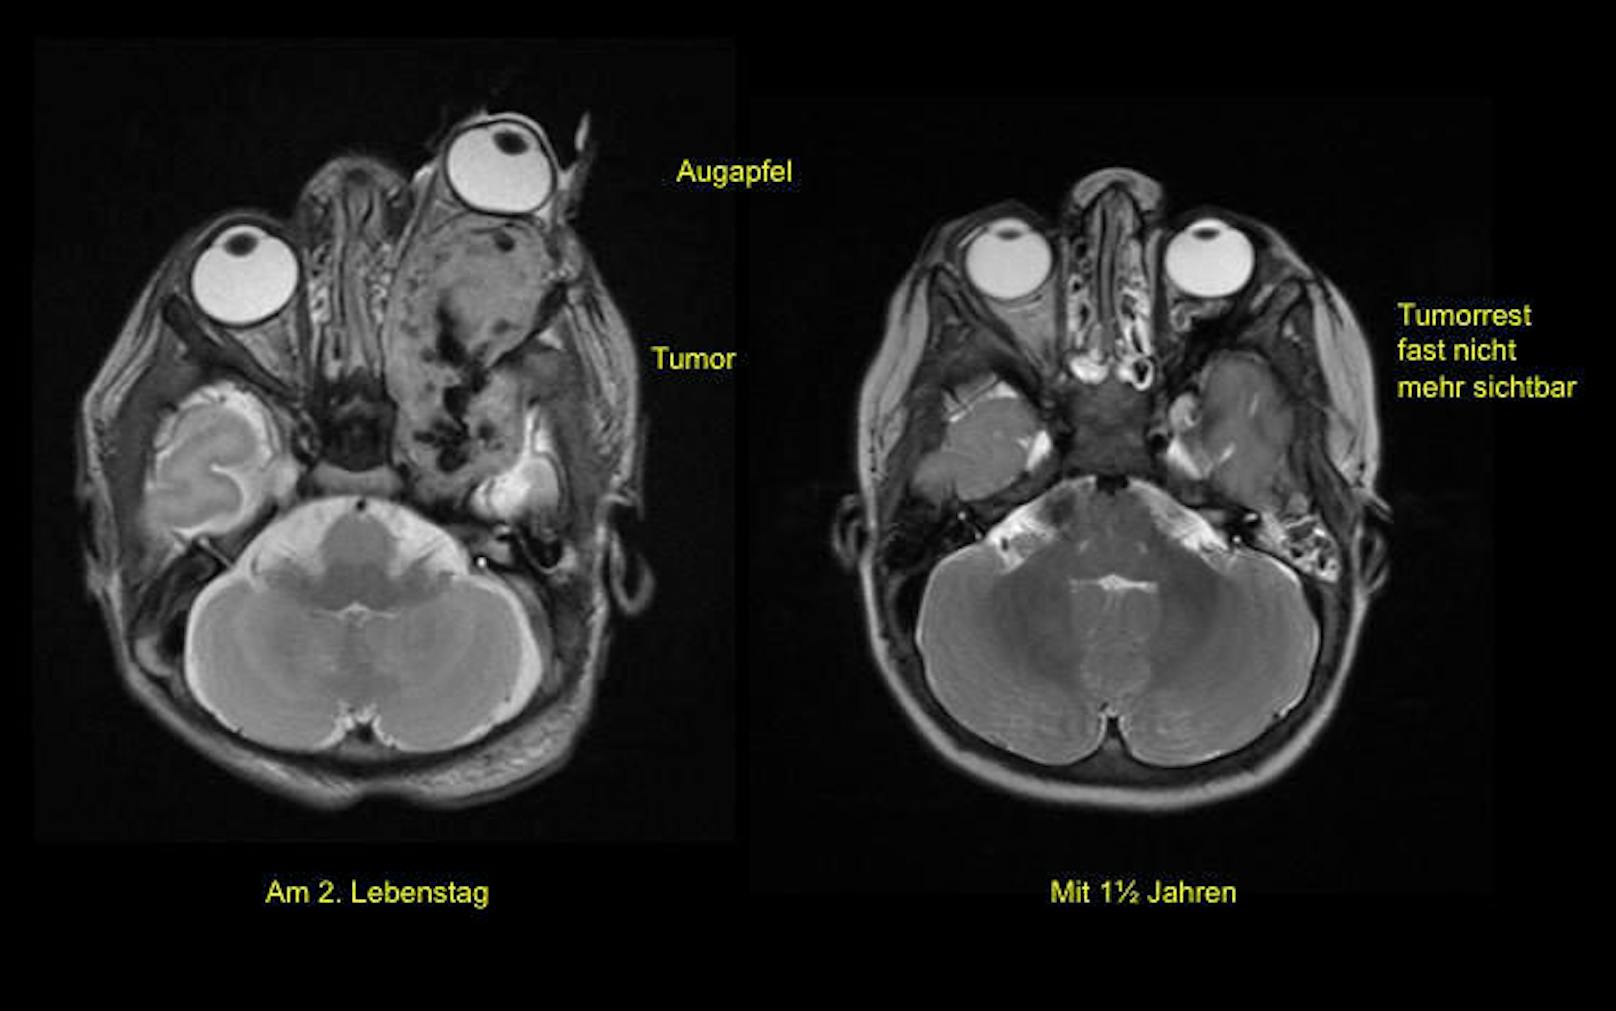 MRI-Bilder zeigen, dass sich das Auge links vollständig außerhalb der Augenhöhle befand. Rechts das Auge <a href="https://www.heute.at/life/gesundheit/story/49028157" target="_blank">nach der erfolgreichen Behandlung mit einem neuartigen Medikament.</a>